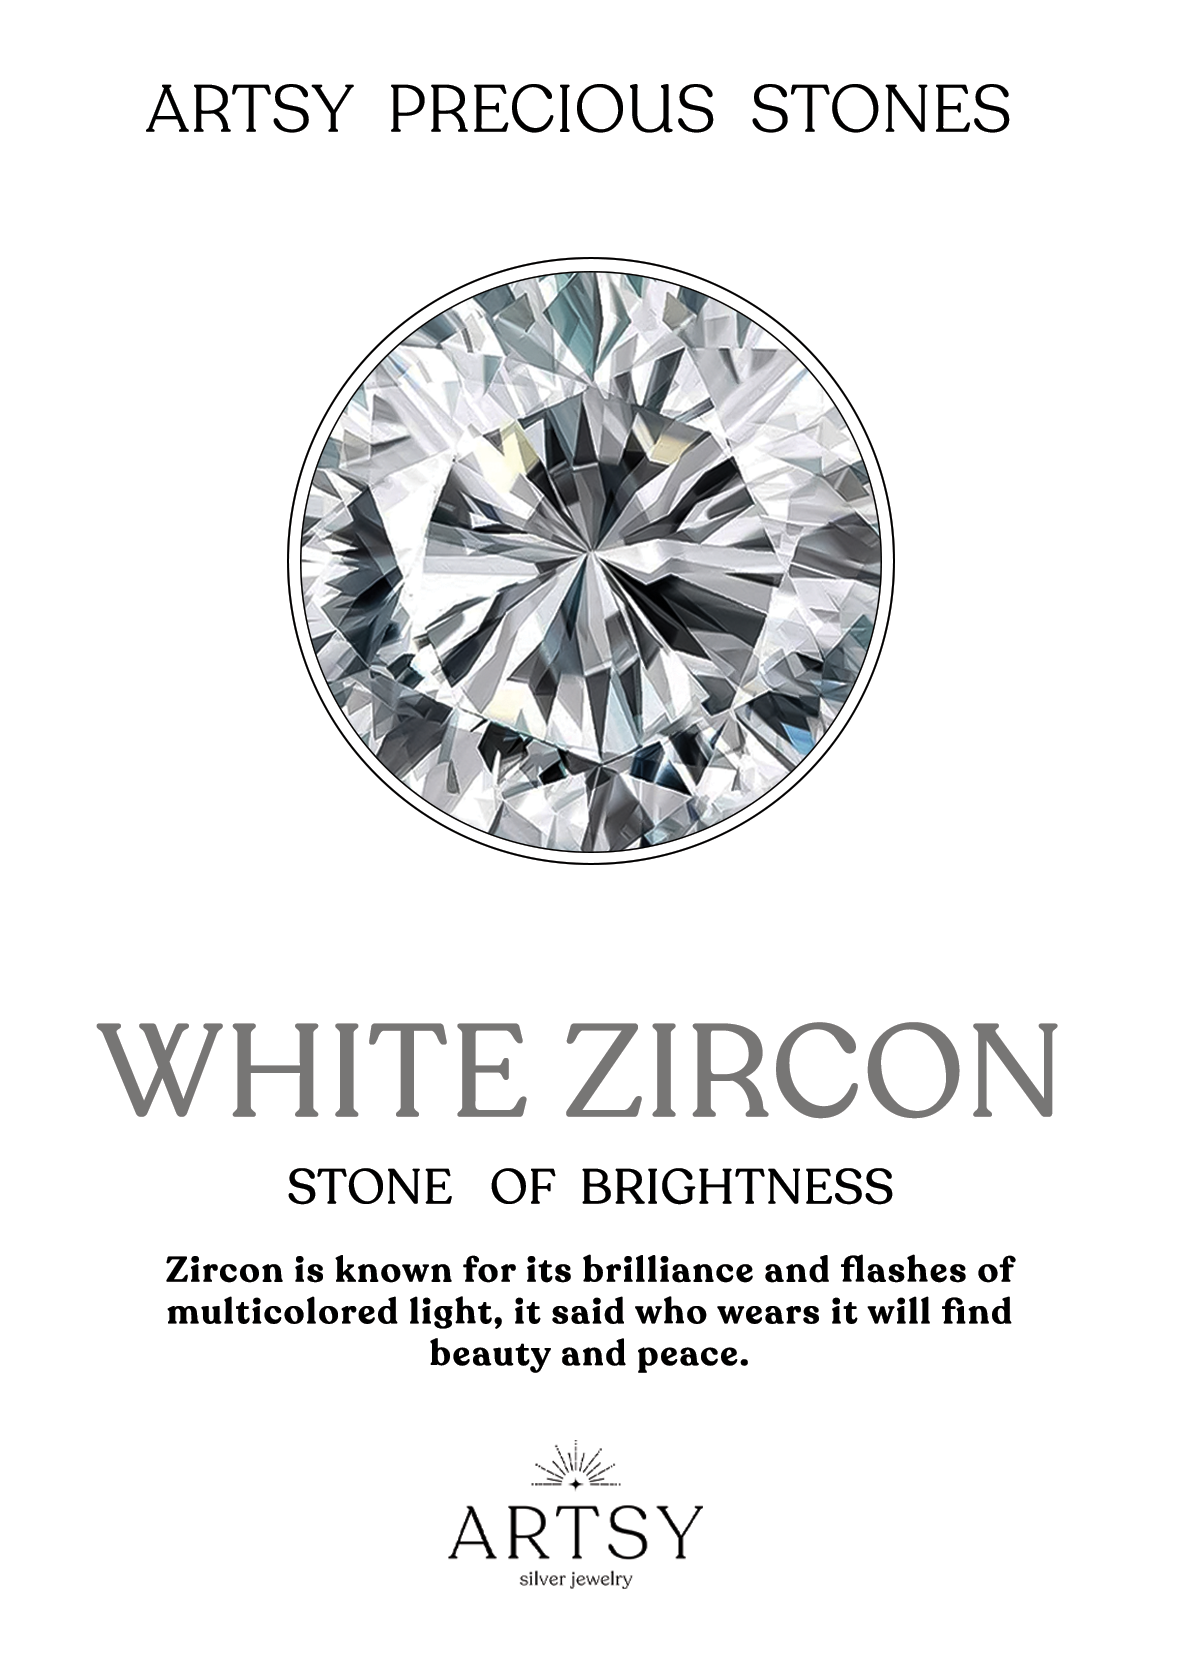 Round Drop Zircon Stone earrings